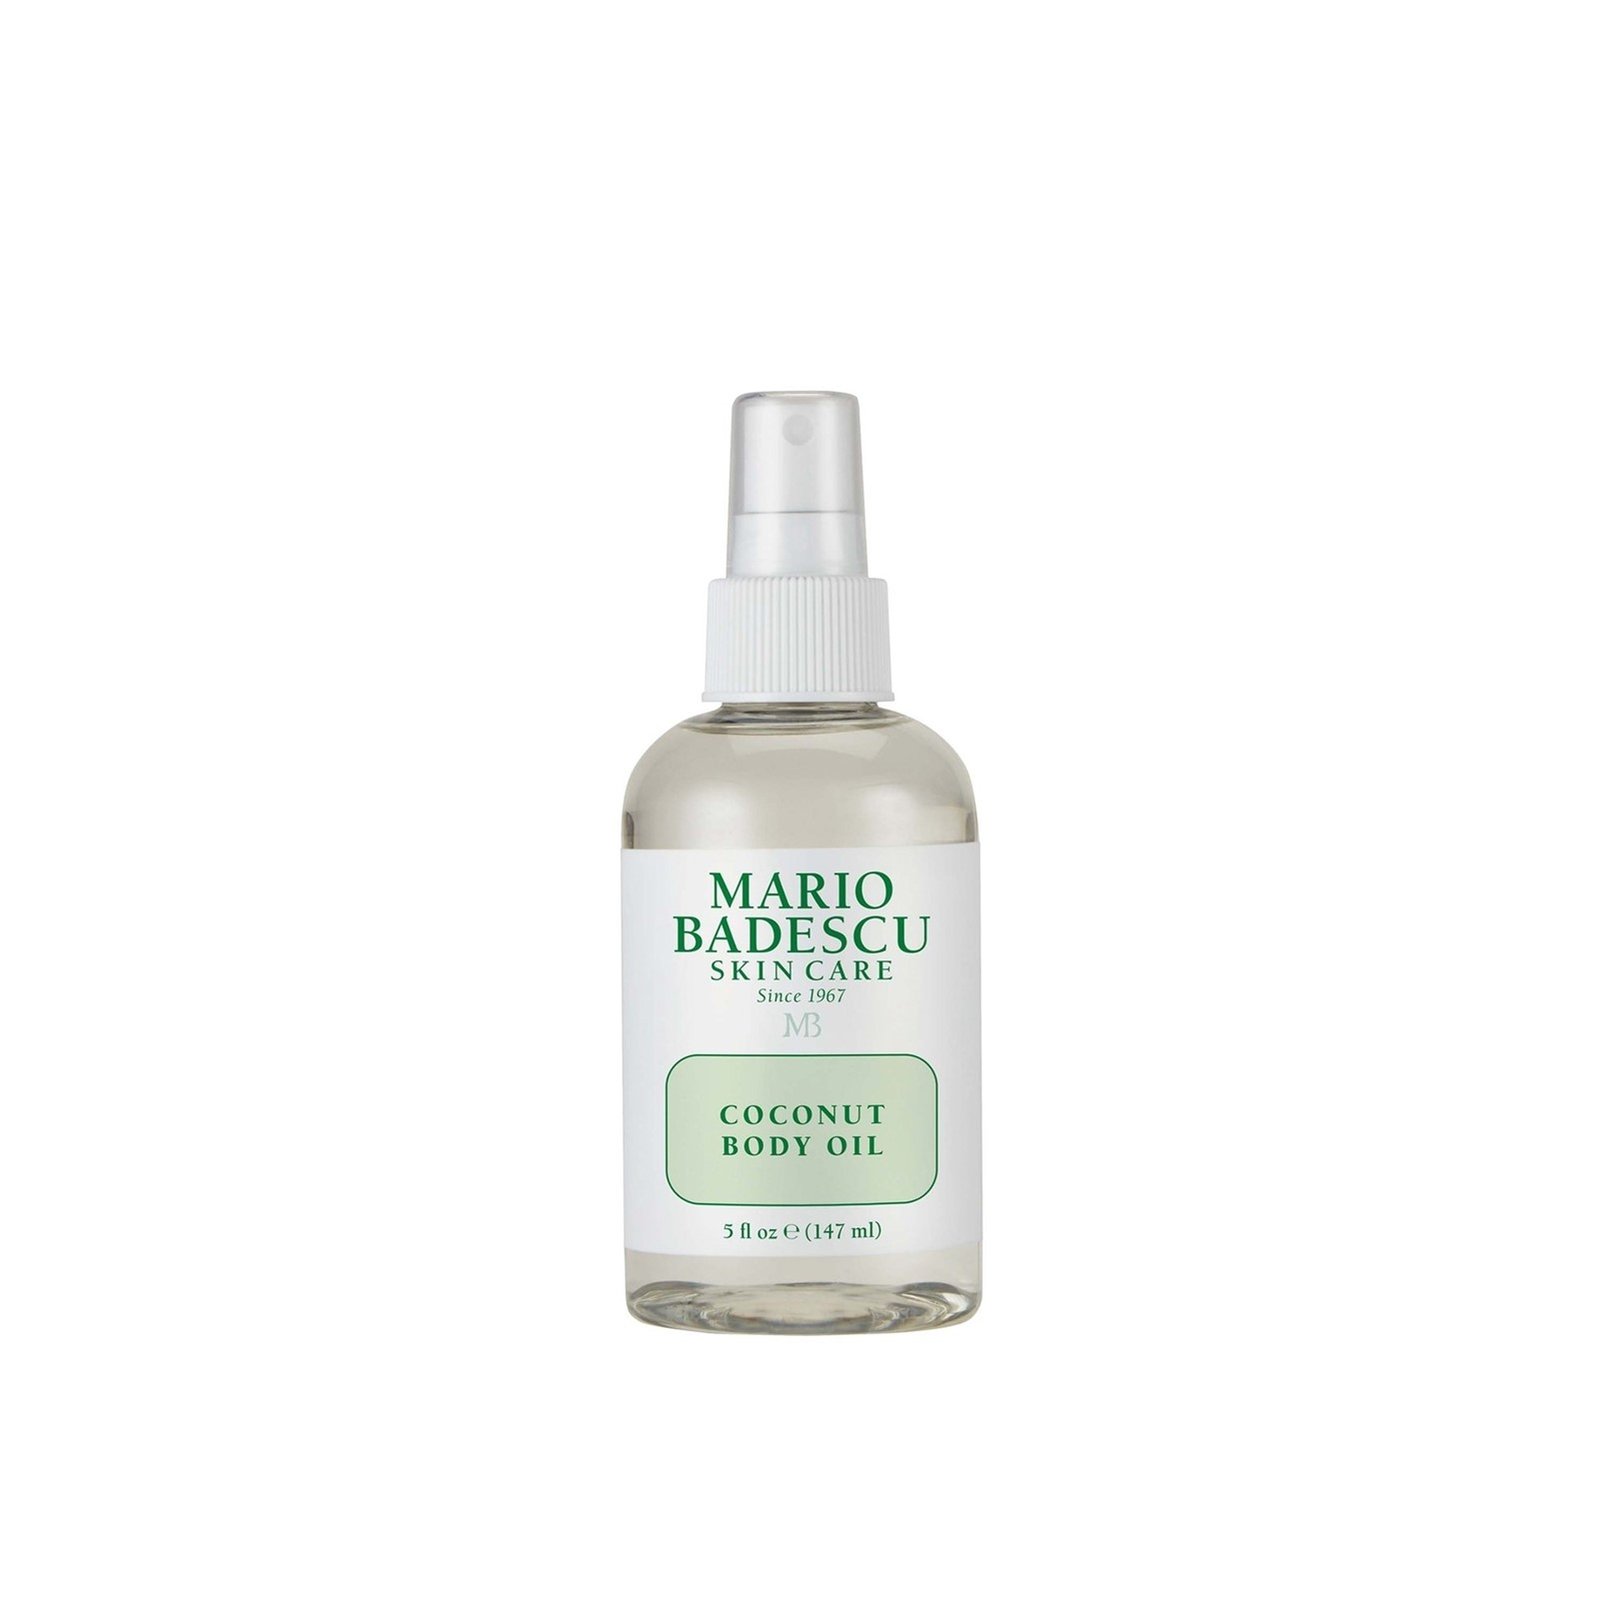 Mario Badescu Coconut Body Oil 147ml (5.0 fl oz)